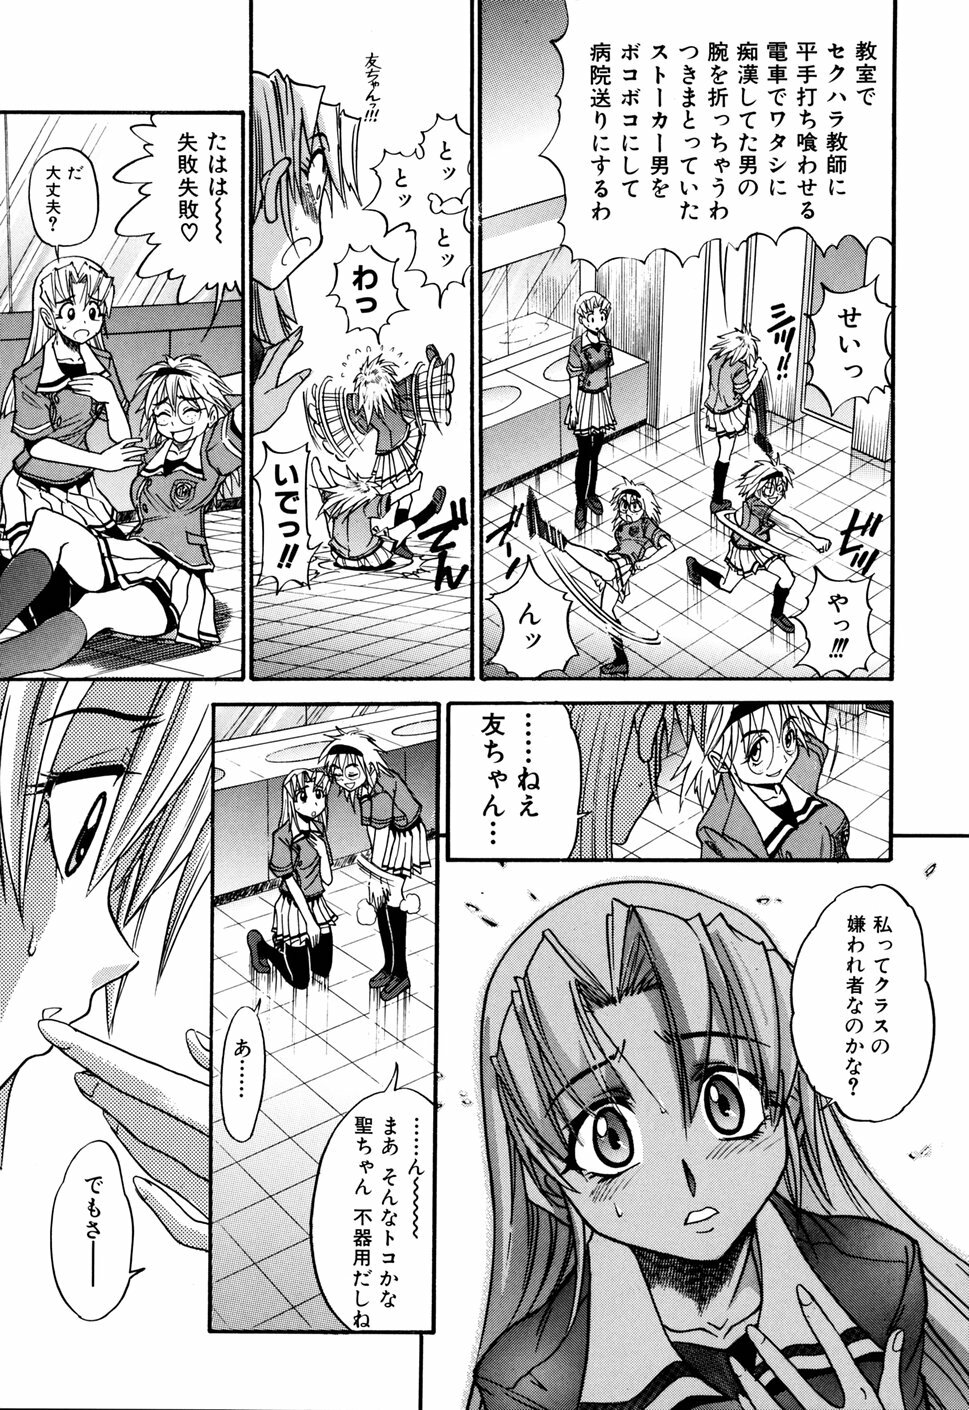 [DISTANCE] Ochiru Tenshi Vol. 1 page 41 full